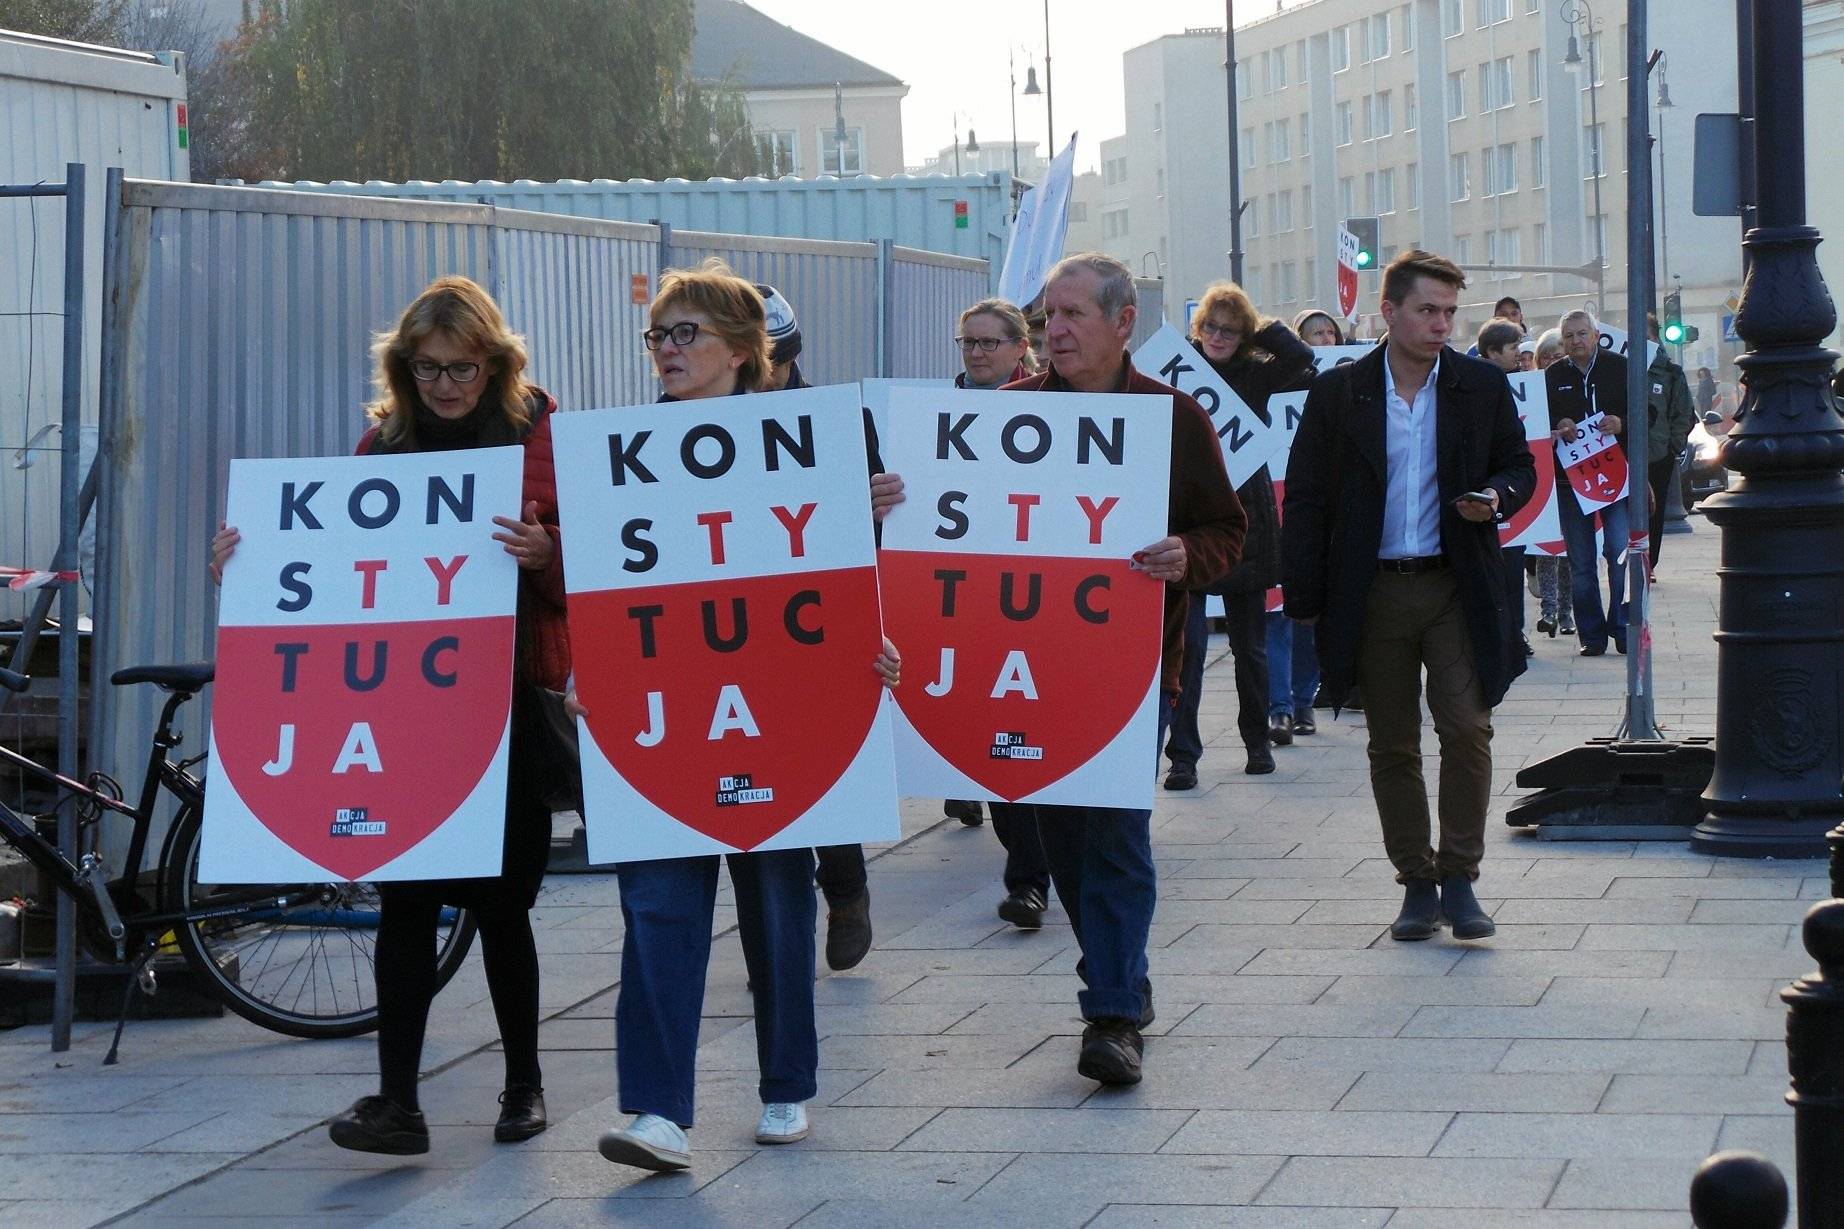 2018.10.11 Warszawa , plac Krasinskich . Protest pod Sadem Najwyzszym .
Fot. Dariusz Borowicz / Agencja Gazeta